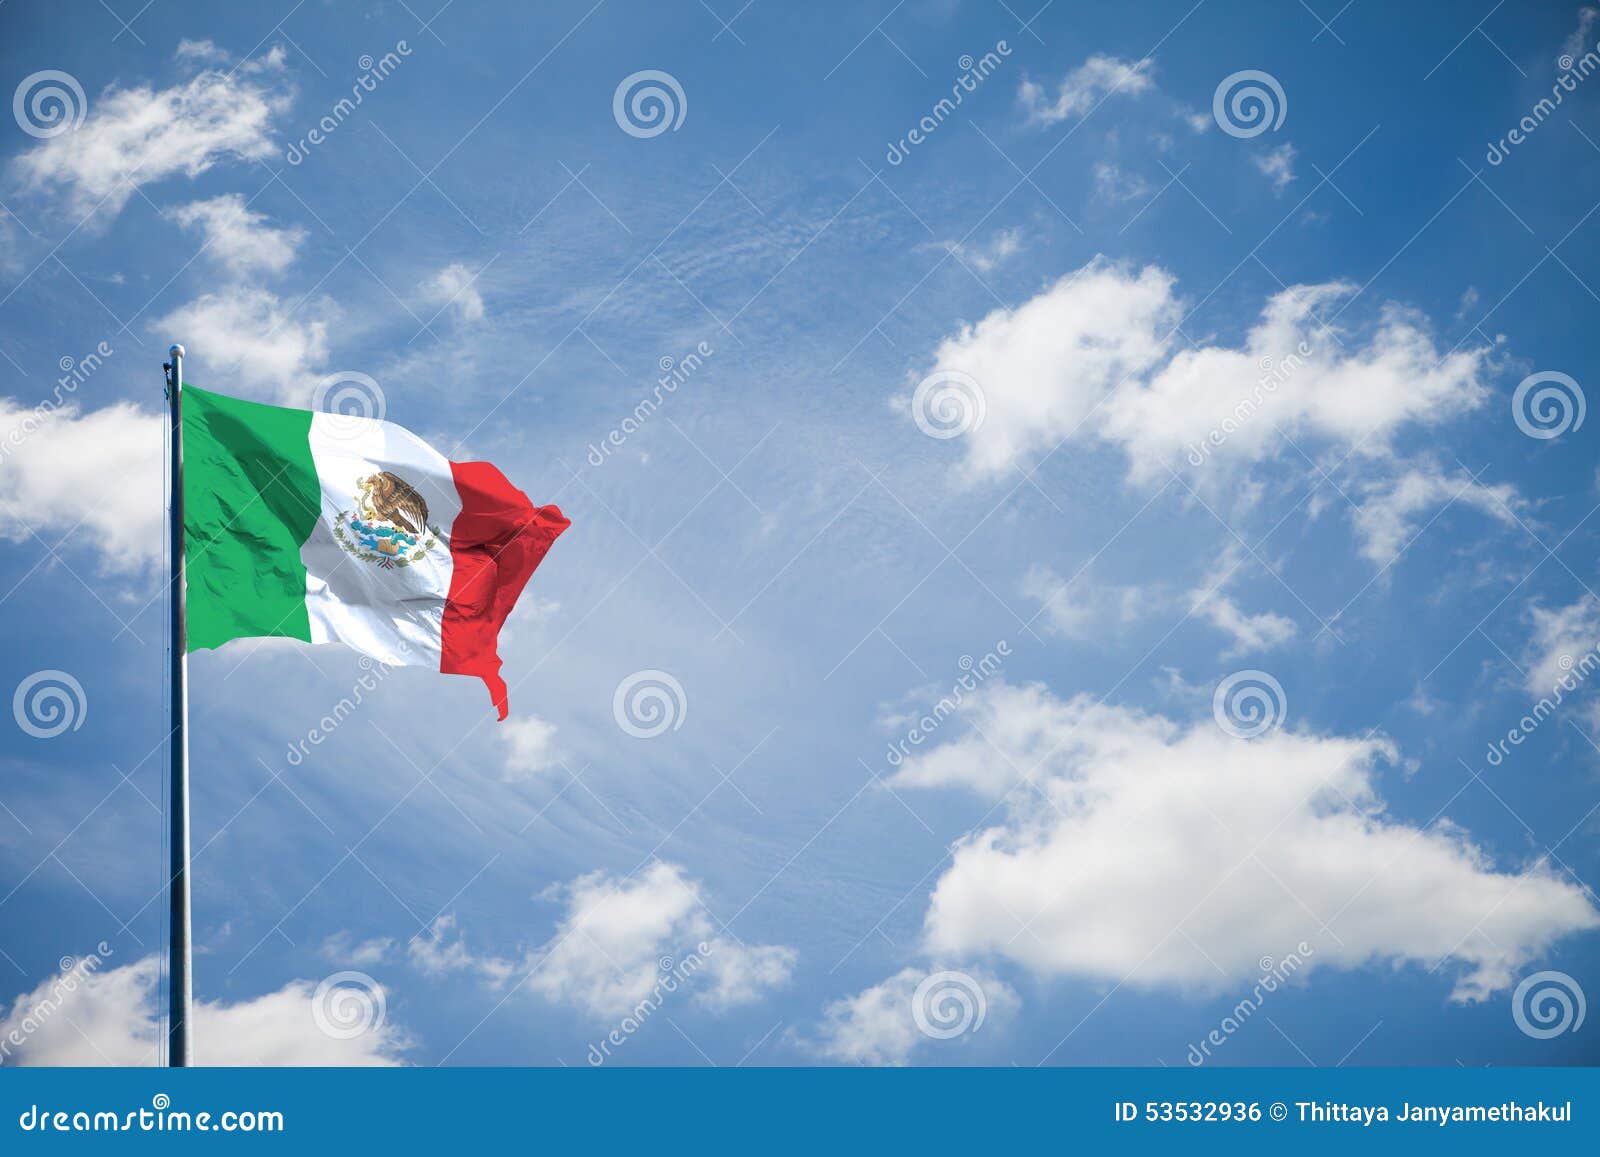 united mexican states or estados unidos mexicanos nation flag